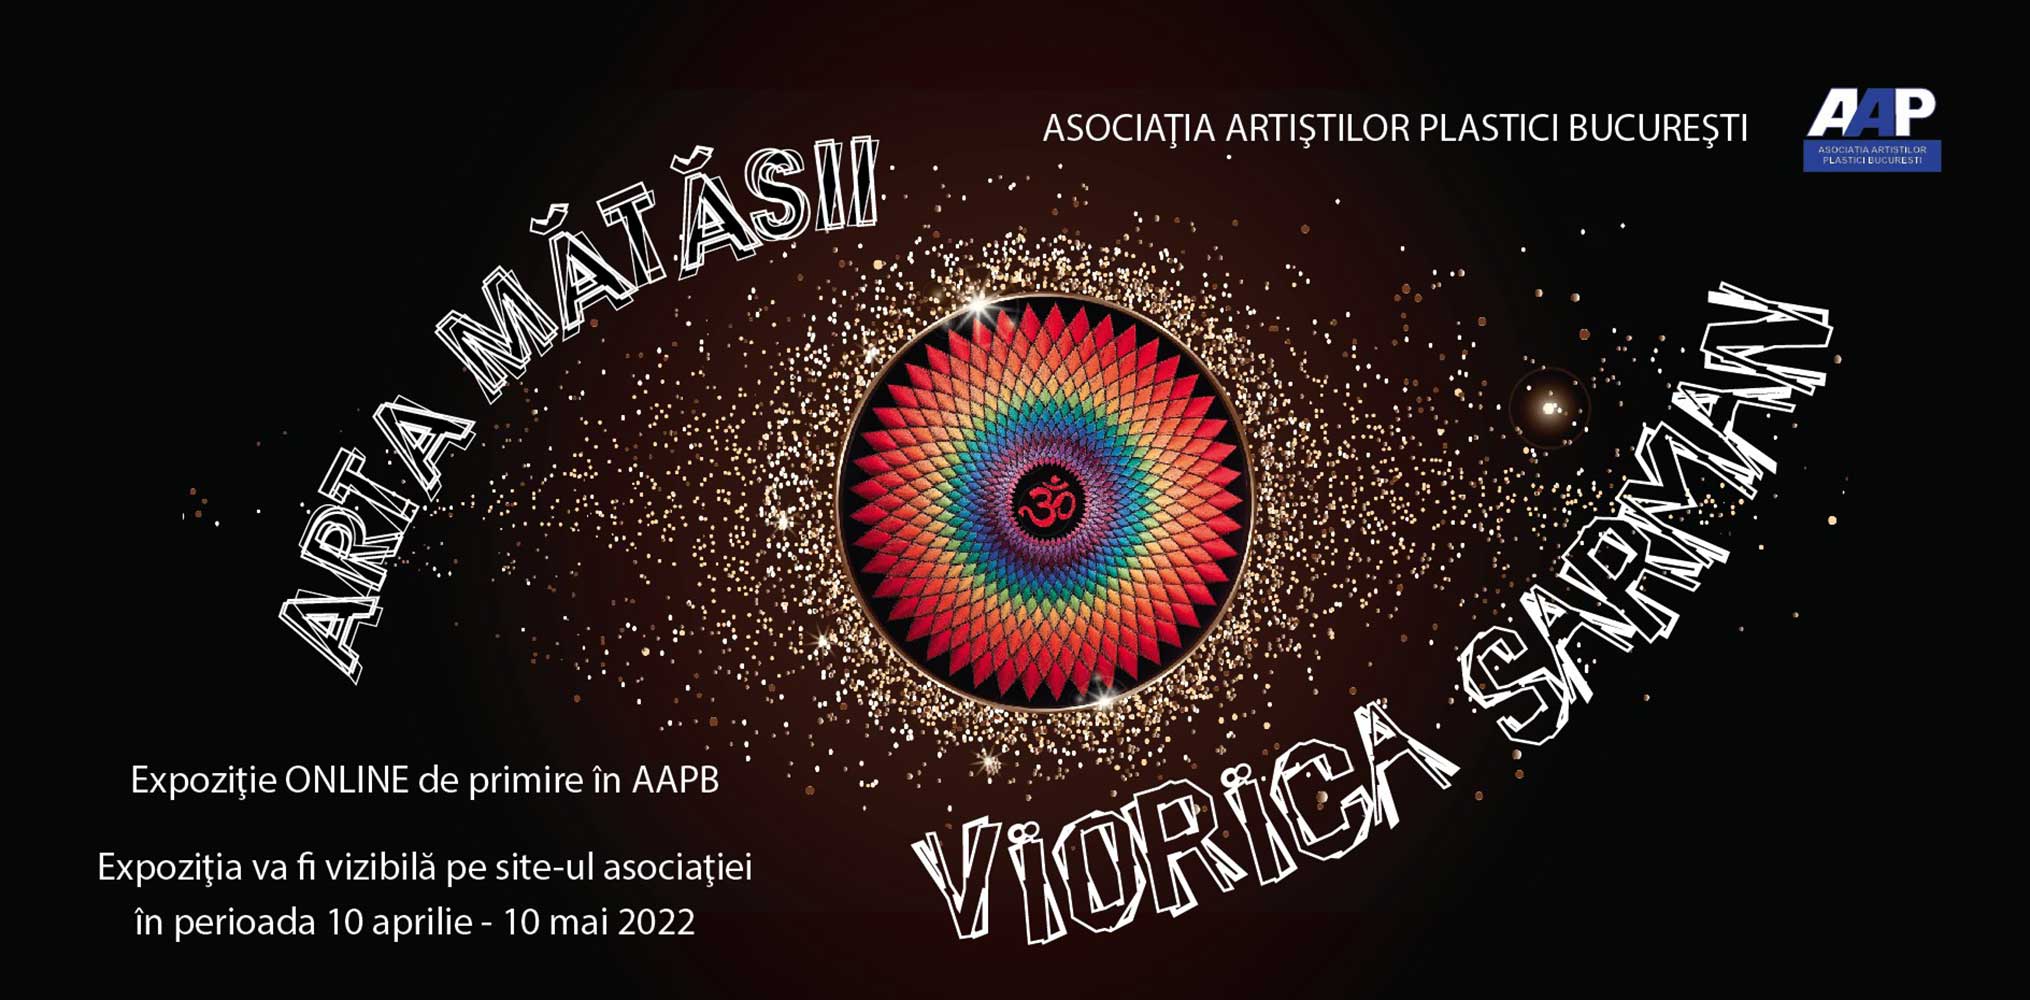 Viorica Sarman „ARTA MĂTĂSII” - expoziţie de primire în AAPB - (10 aprilie - 10 mai 2022) - ONLINE